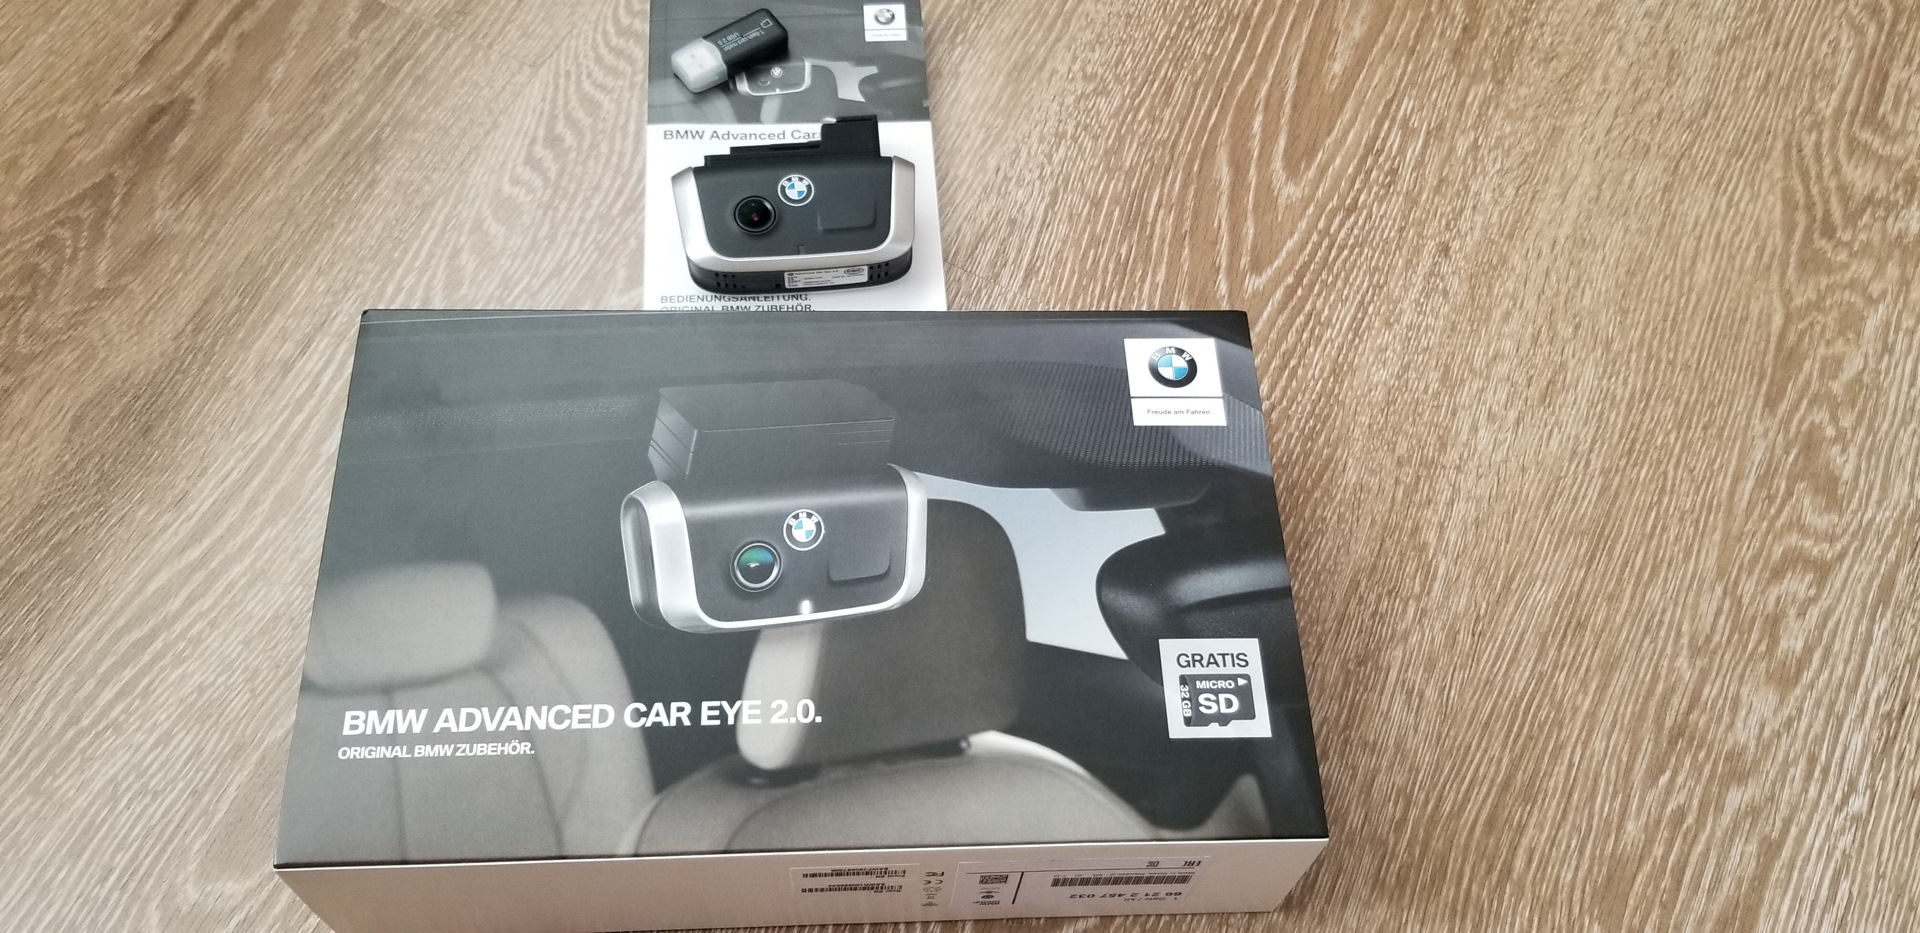 Car eye 3. BMW Advanced car Eye 2.0. Регистратор BMW Advanced car Eye. Видеорегистратор BMW Advanced car Eye 2.0 Pro. Видеорегистратор BMW Advanced car Eye (Front+Rear cam), 2 камеры, GPS.